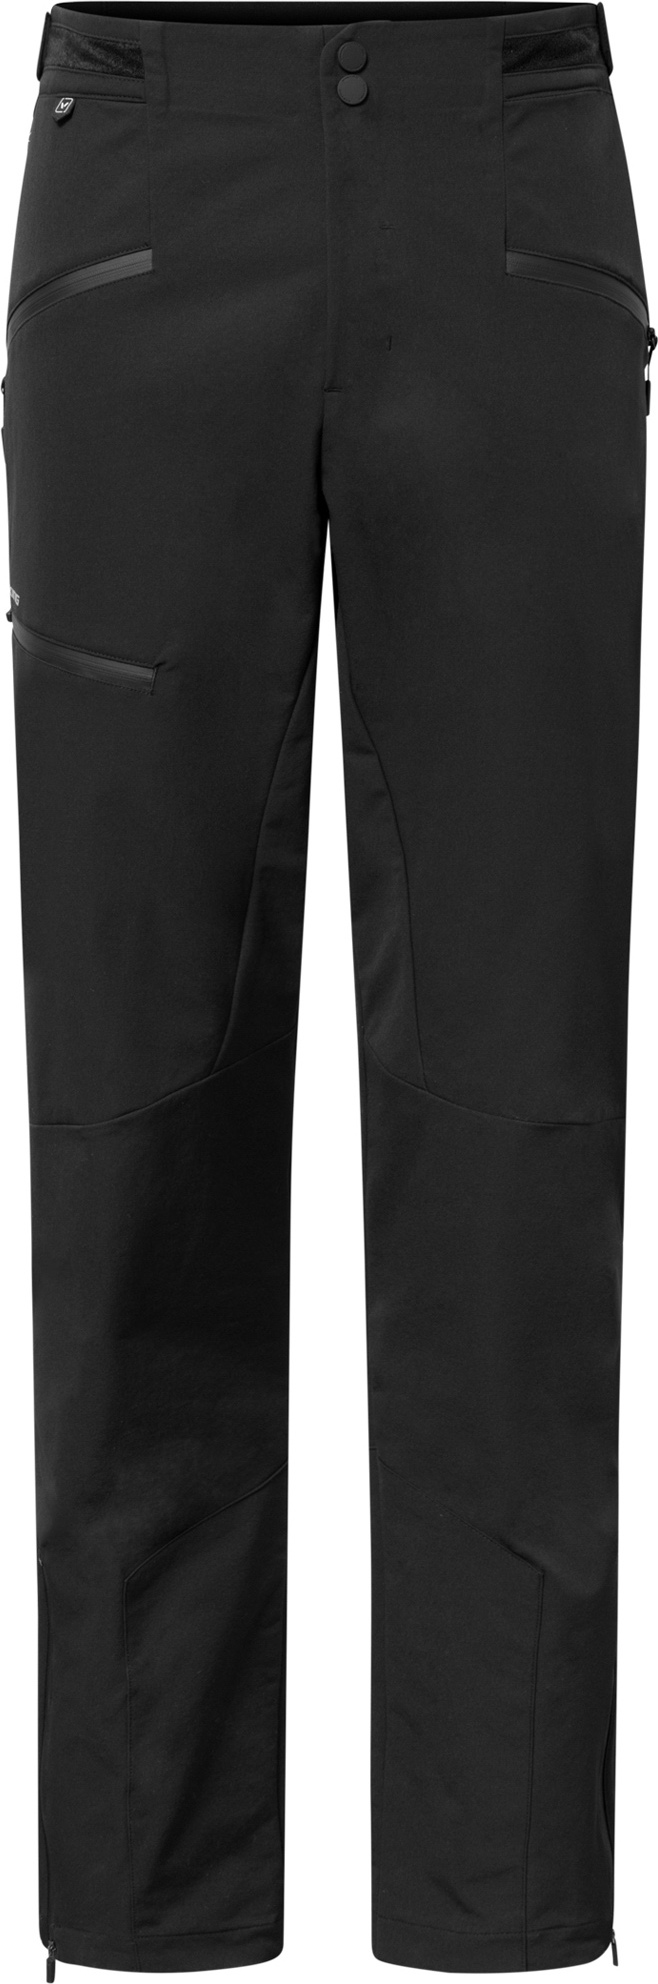 Pánské outdoorové kalhoty VIKING Expander Warm černá Velikost: S